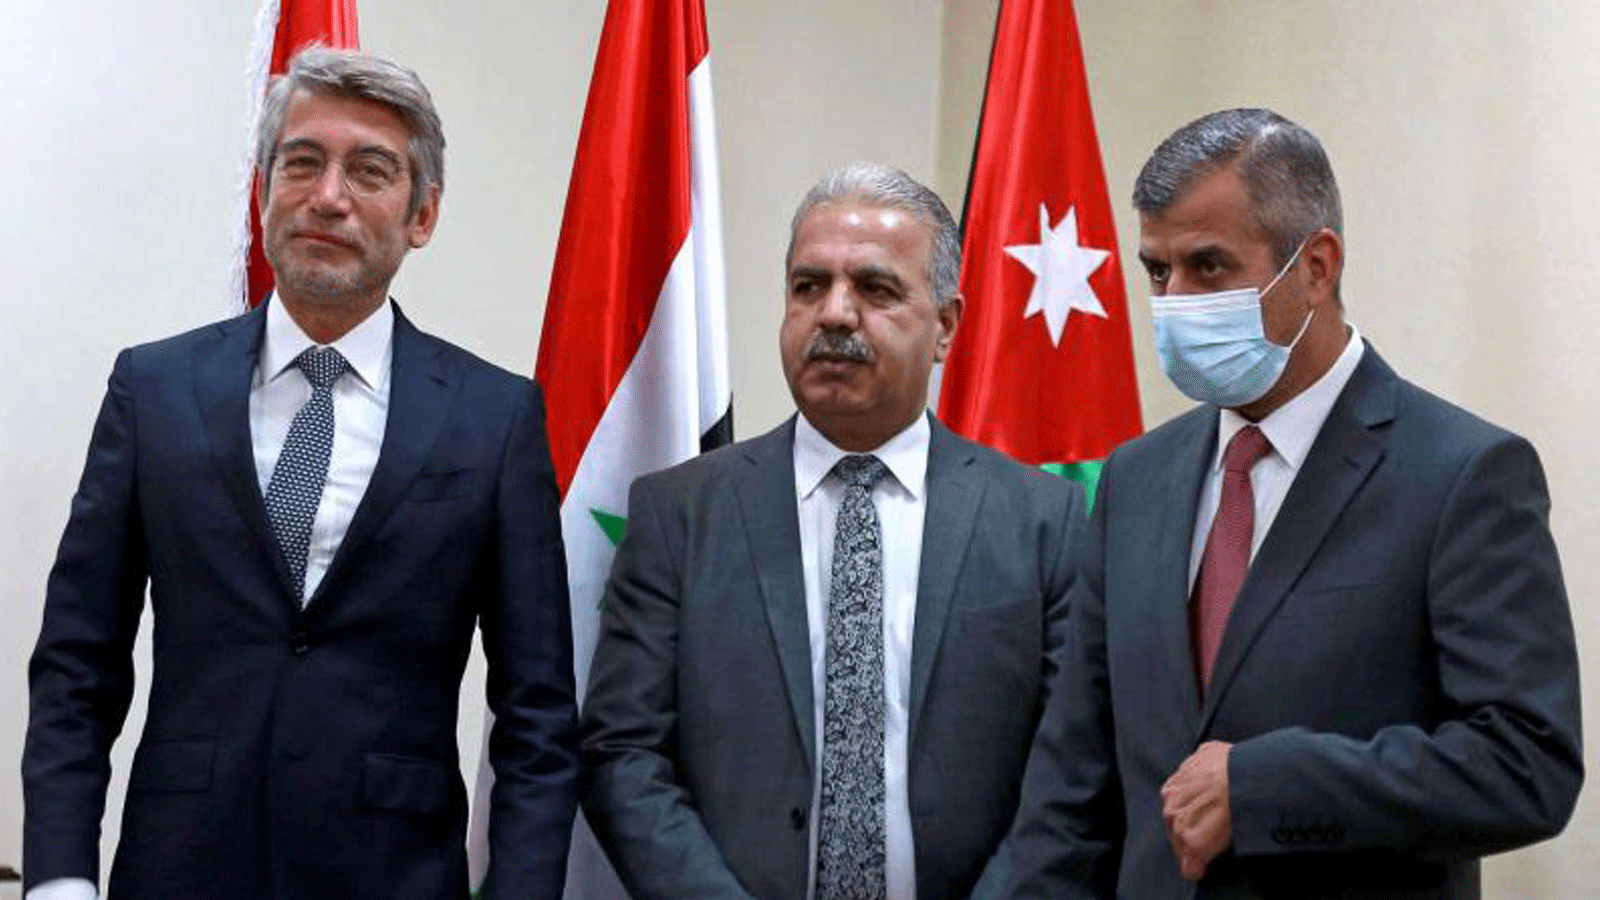  وزير الطاقة الأردني صالح الخربشة (يمين) يستقبل نظيريه من سوريا بسام طعمة (وسط) ومن لبنان وليد فياض خلال اجتماع في عمان في 28 تشرين الأول/أكتوبر 2021.